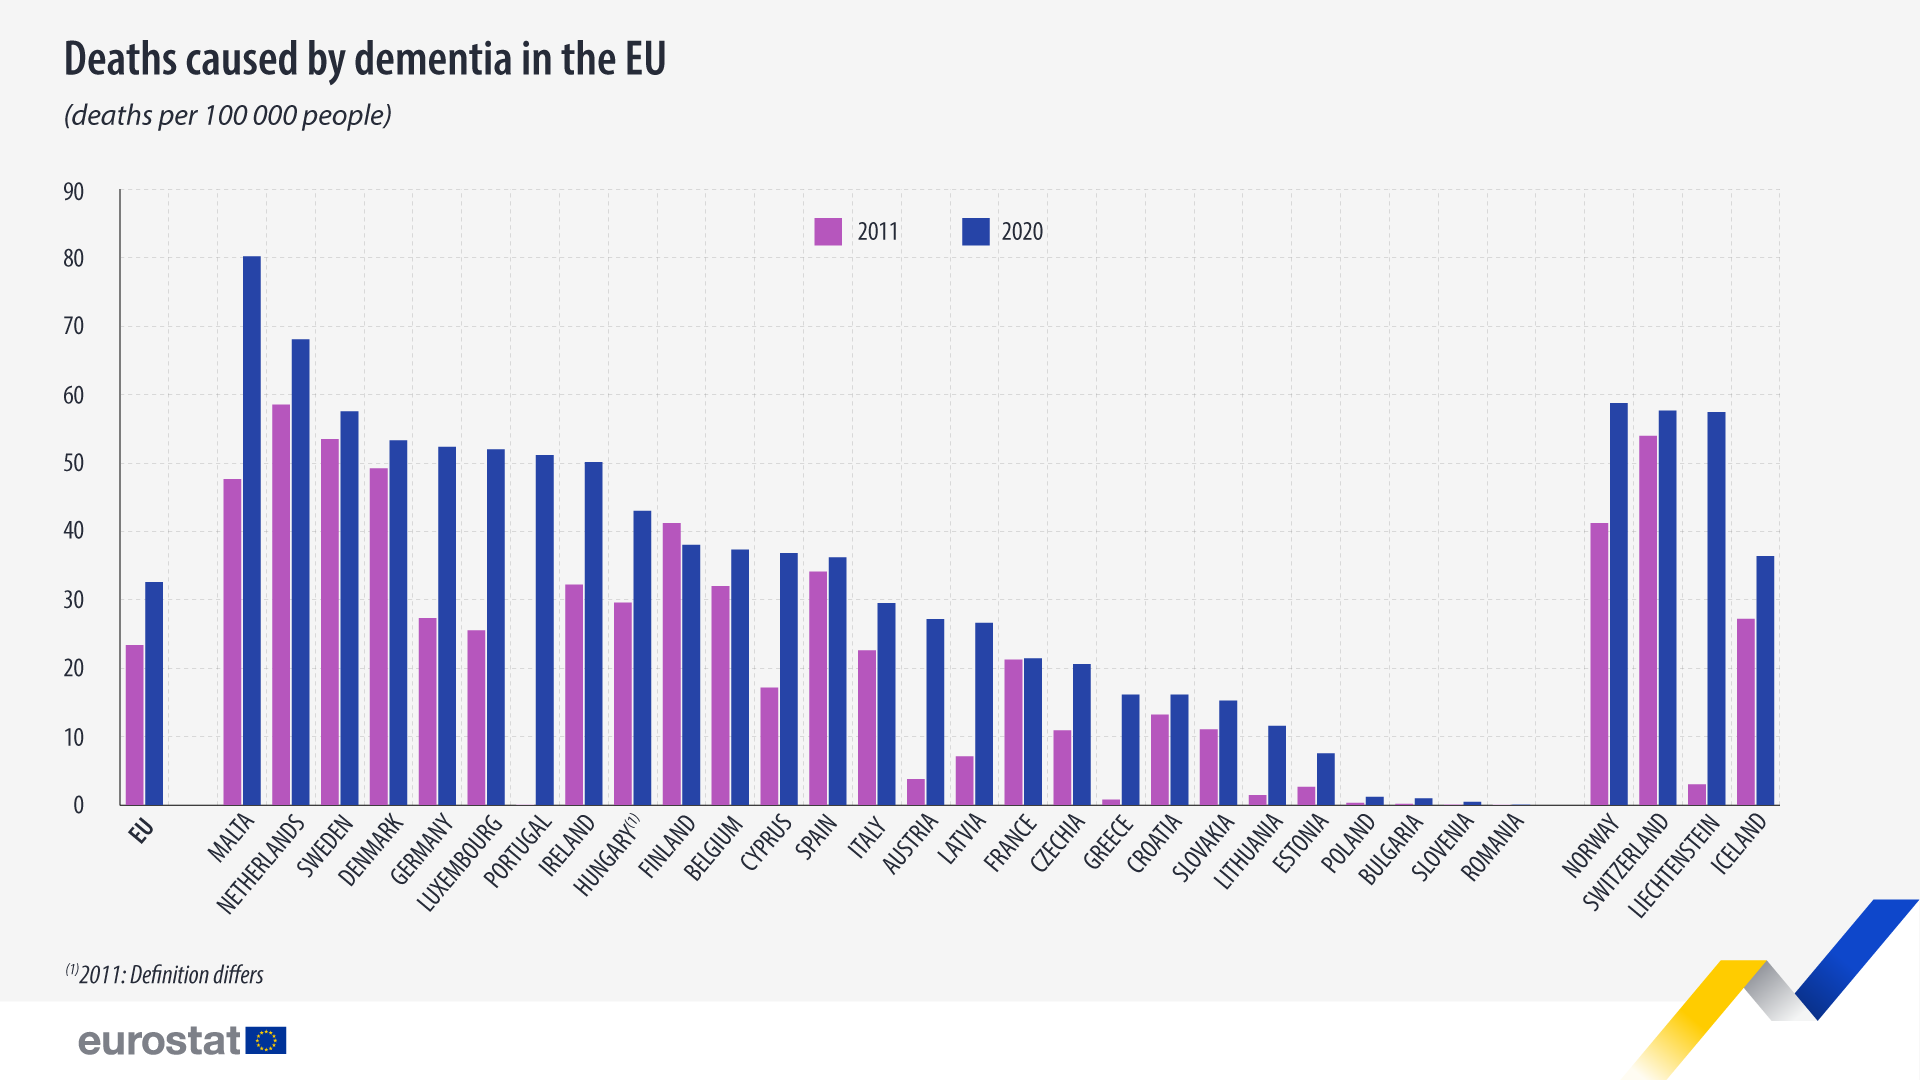 Тракасти графикон: Смртности узроковане деменцијом у ЕУ, стопа смртности